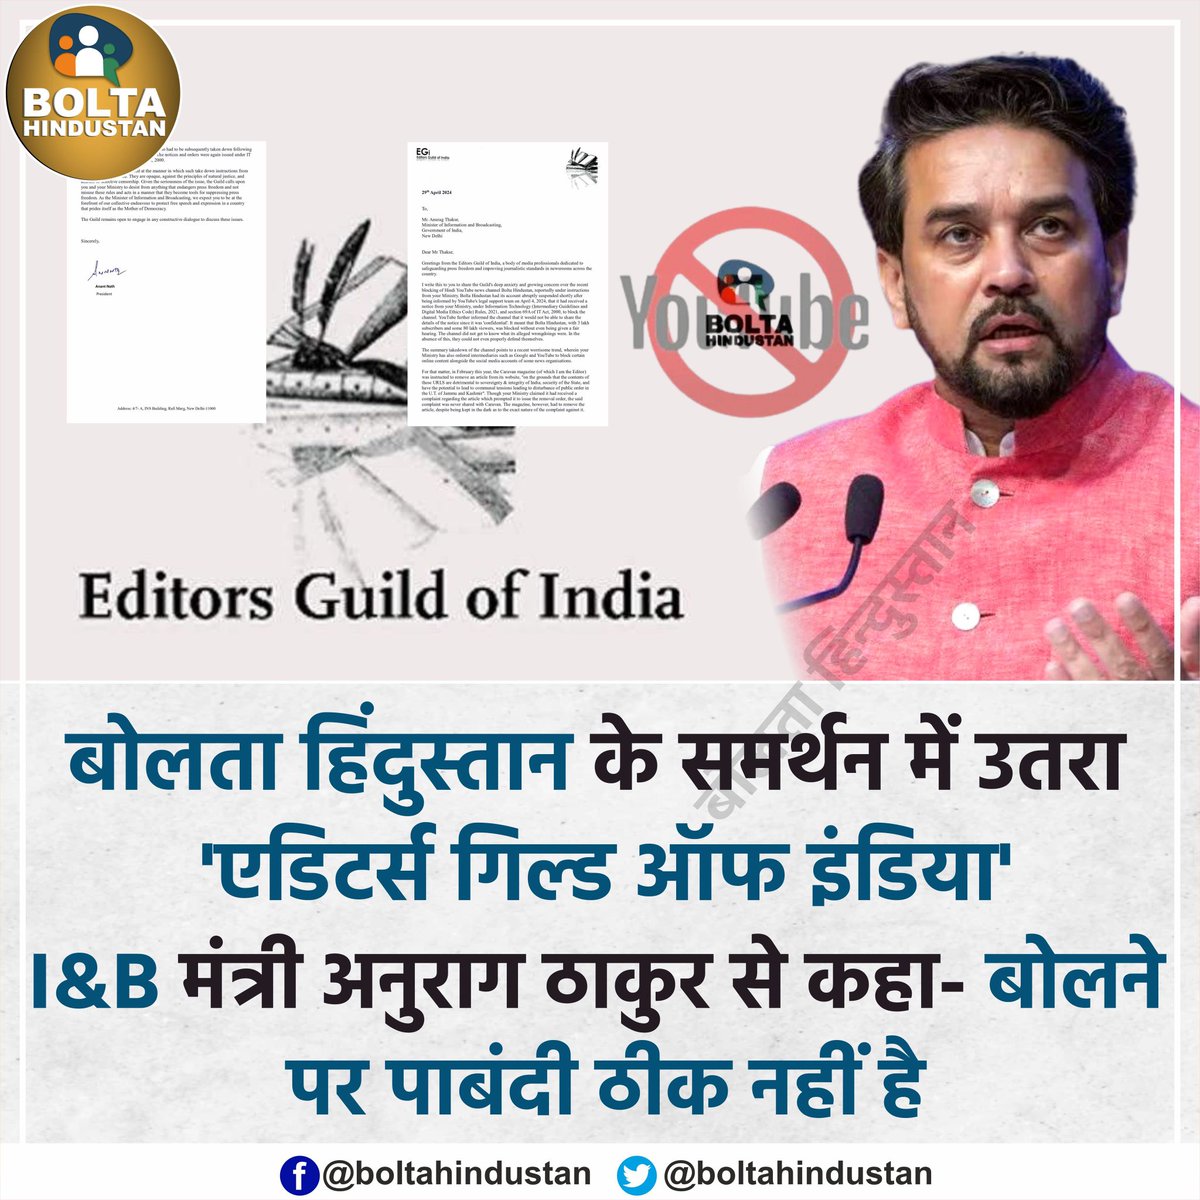 Digipub, प्रेस क्लब ऑफ इंडिया के बाद 'एडिटर्स गिल्ड ऑफ इंडिया' ने बोलता हिंदुस्तान के बैन के खिलाफ तीखी प्रतिक्रिया दी है